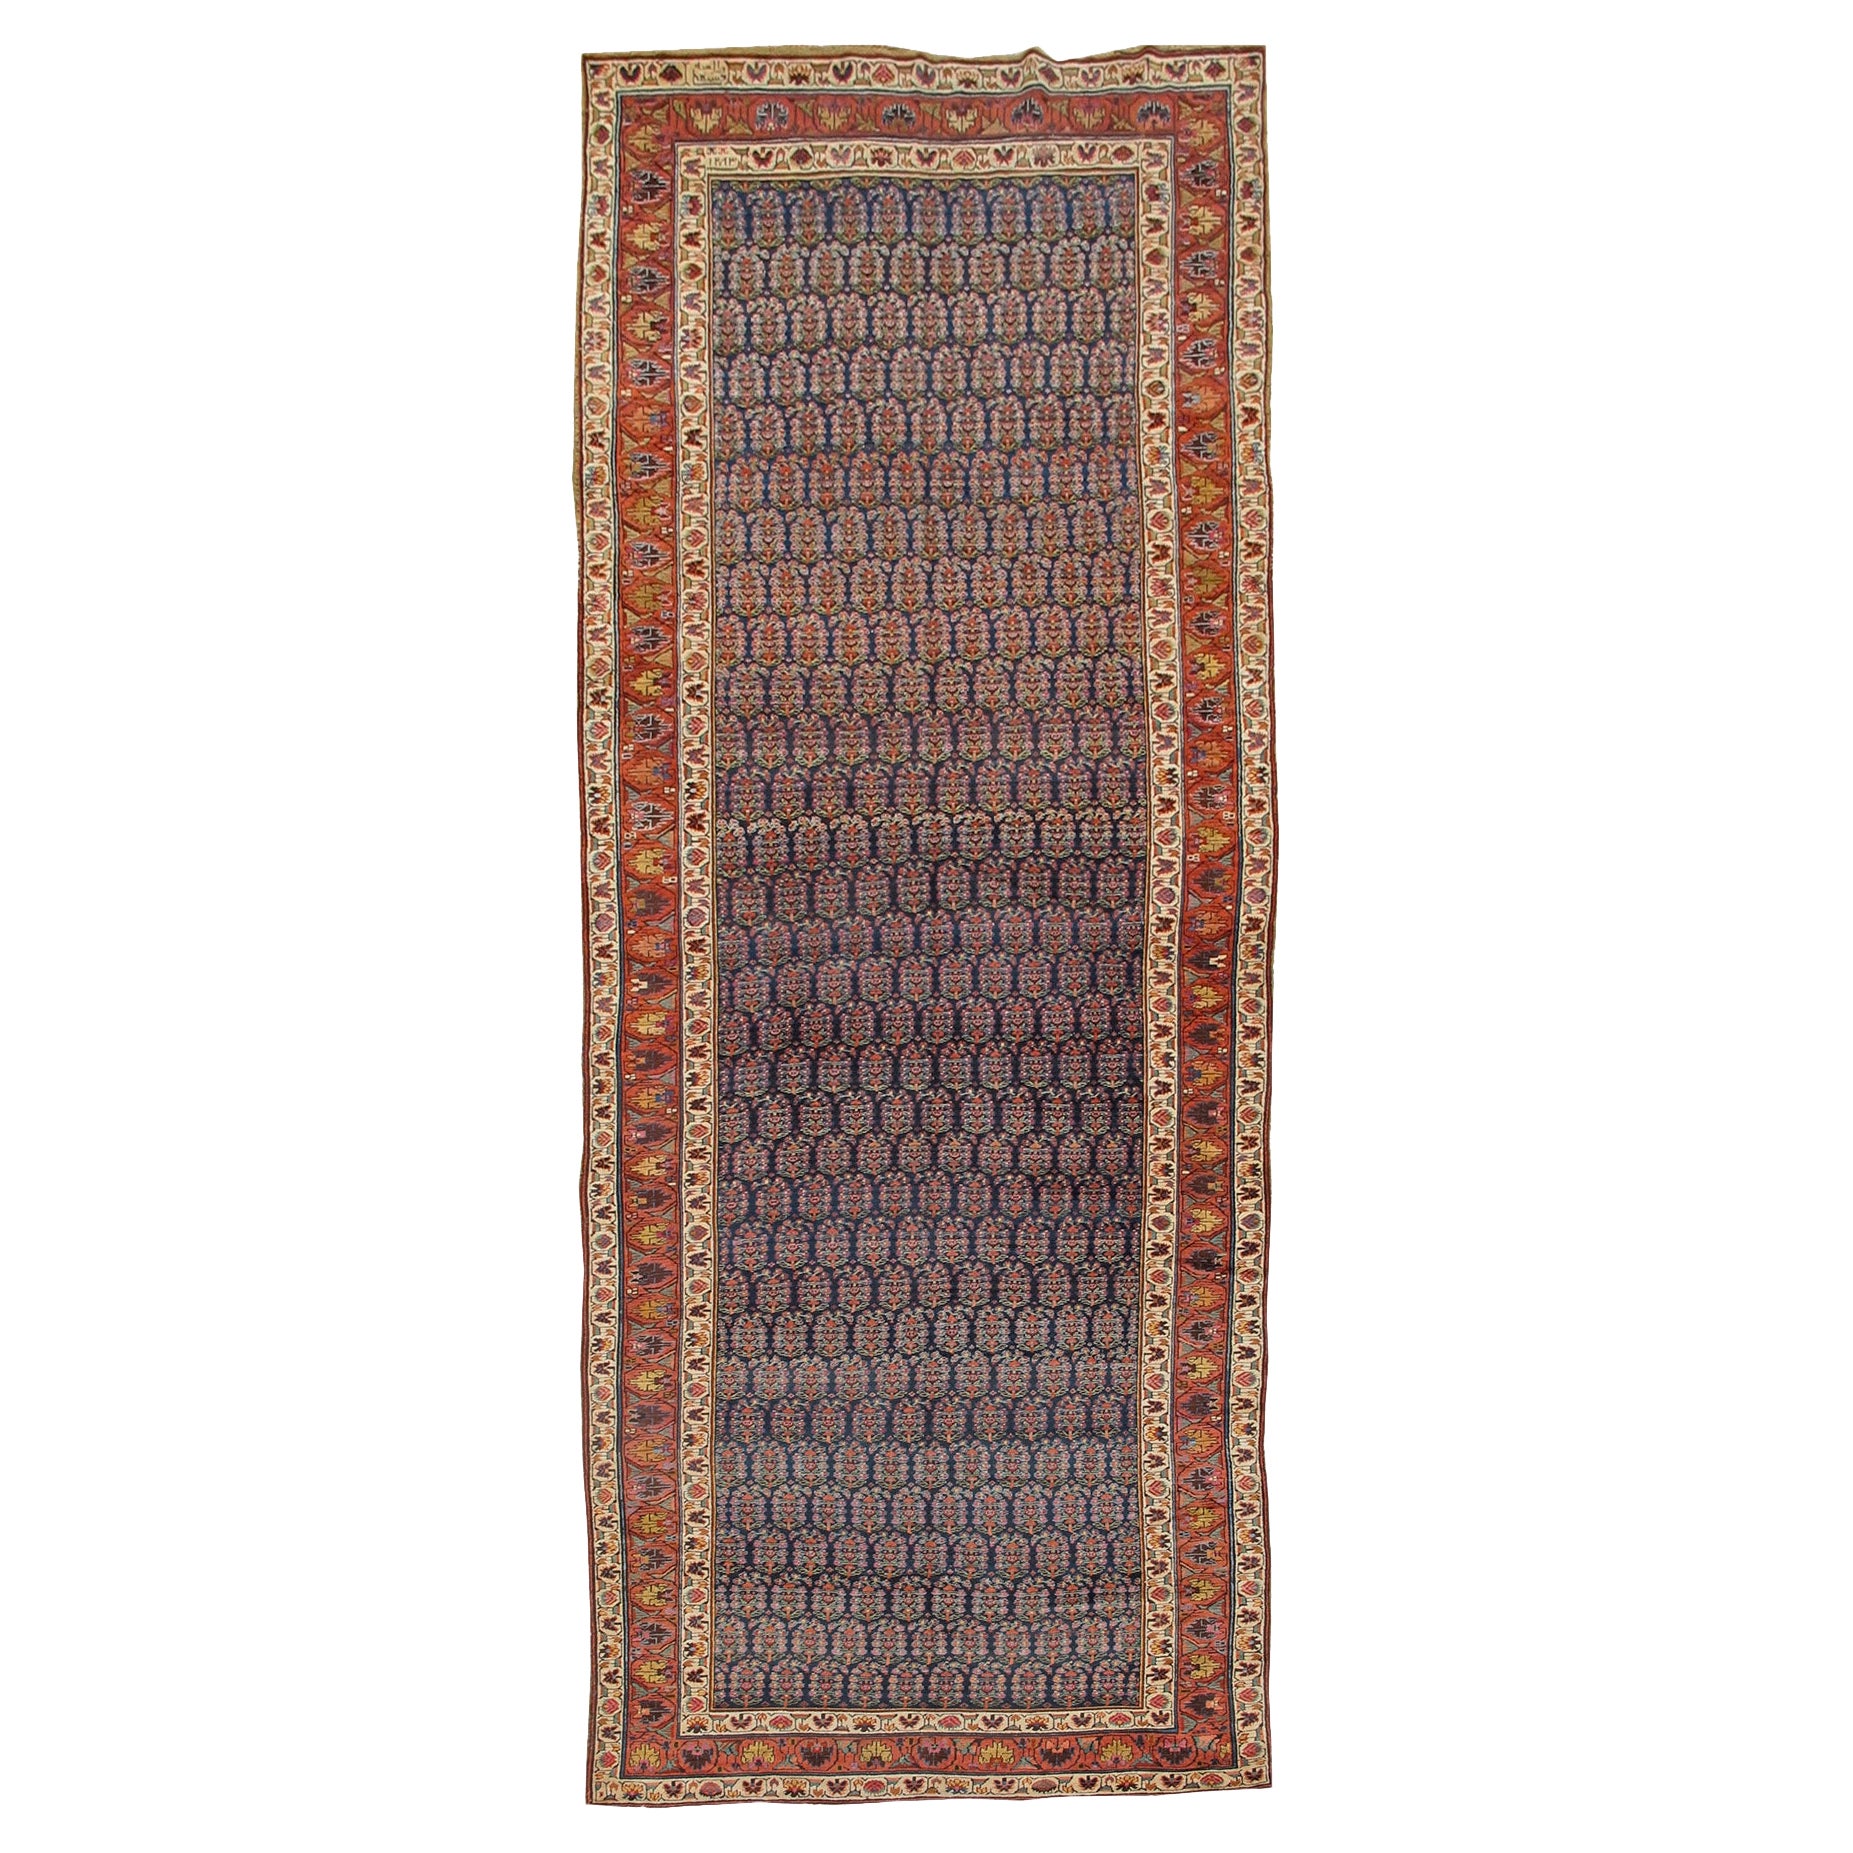 Antique Northwest Persian Rug, c. 1866